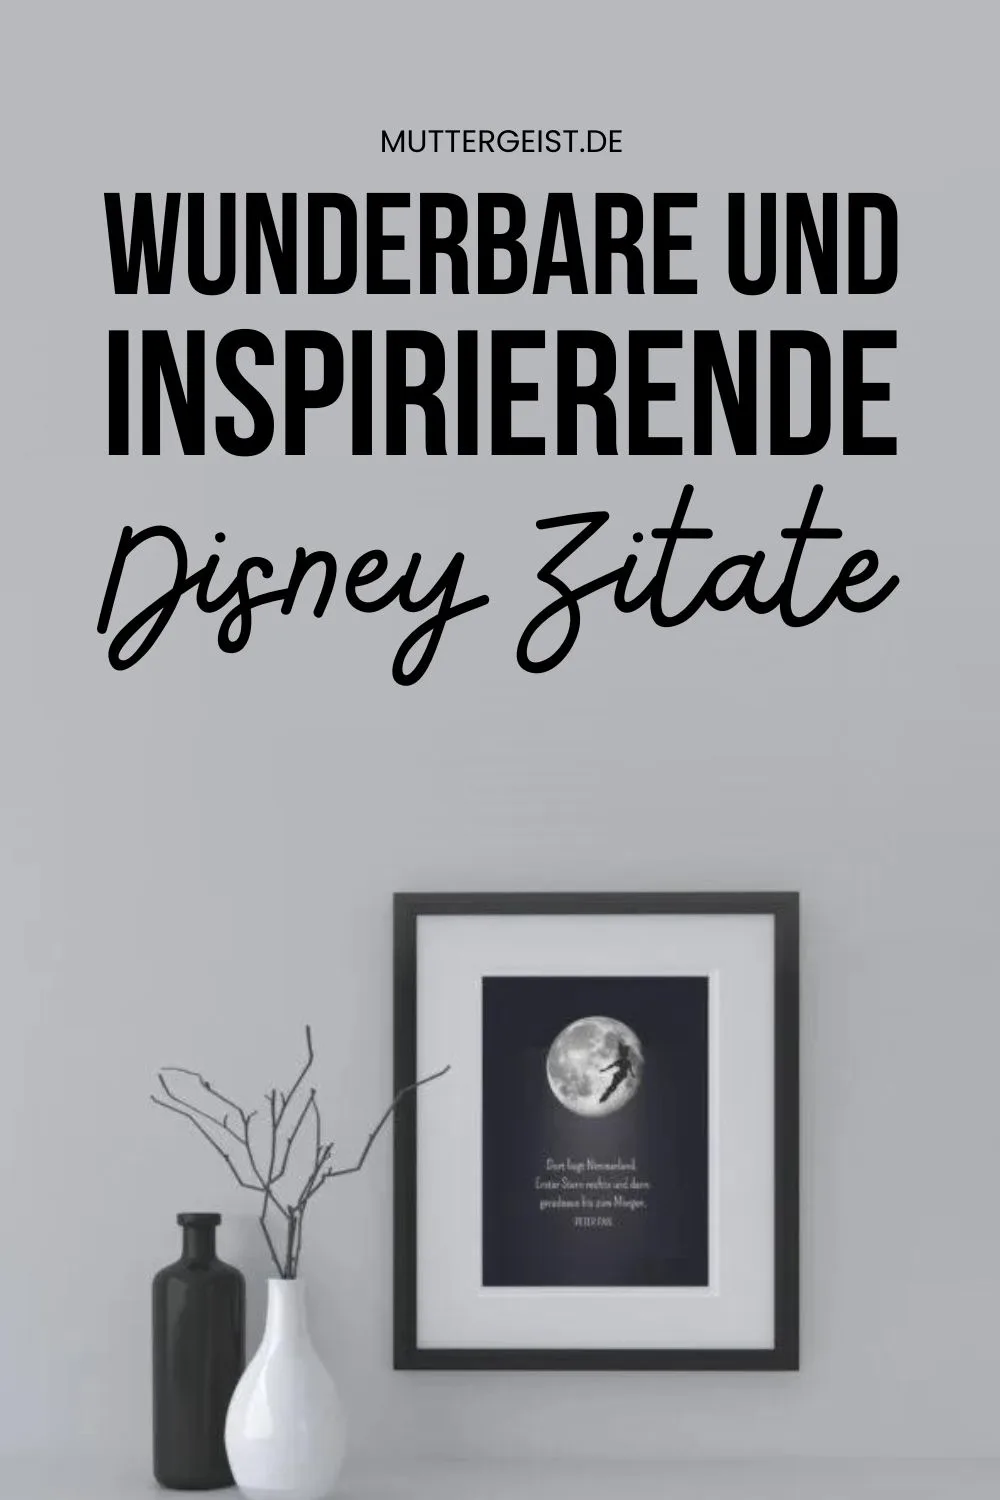 Wunderbare und inspirierende Disney Zitate Pinterest